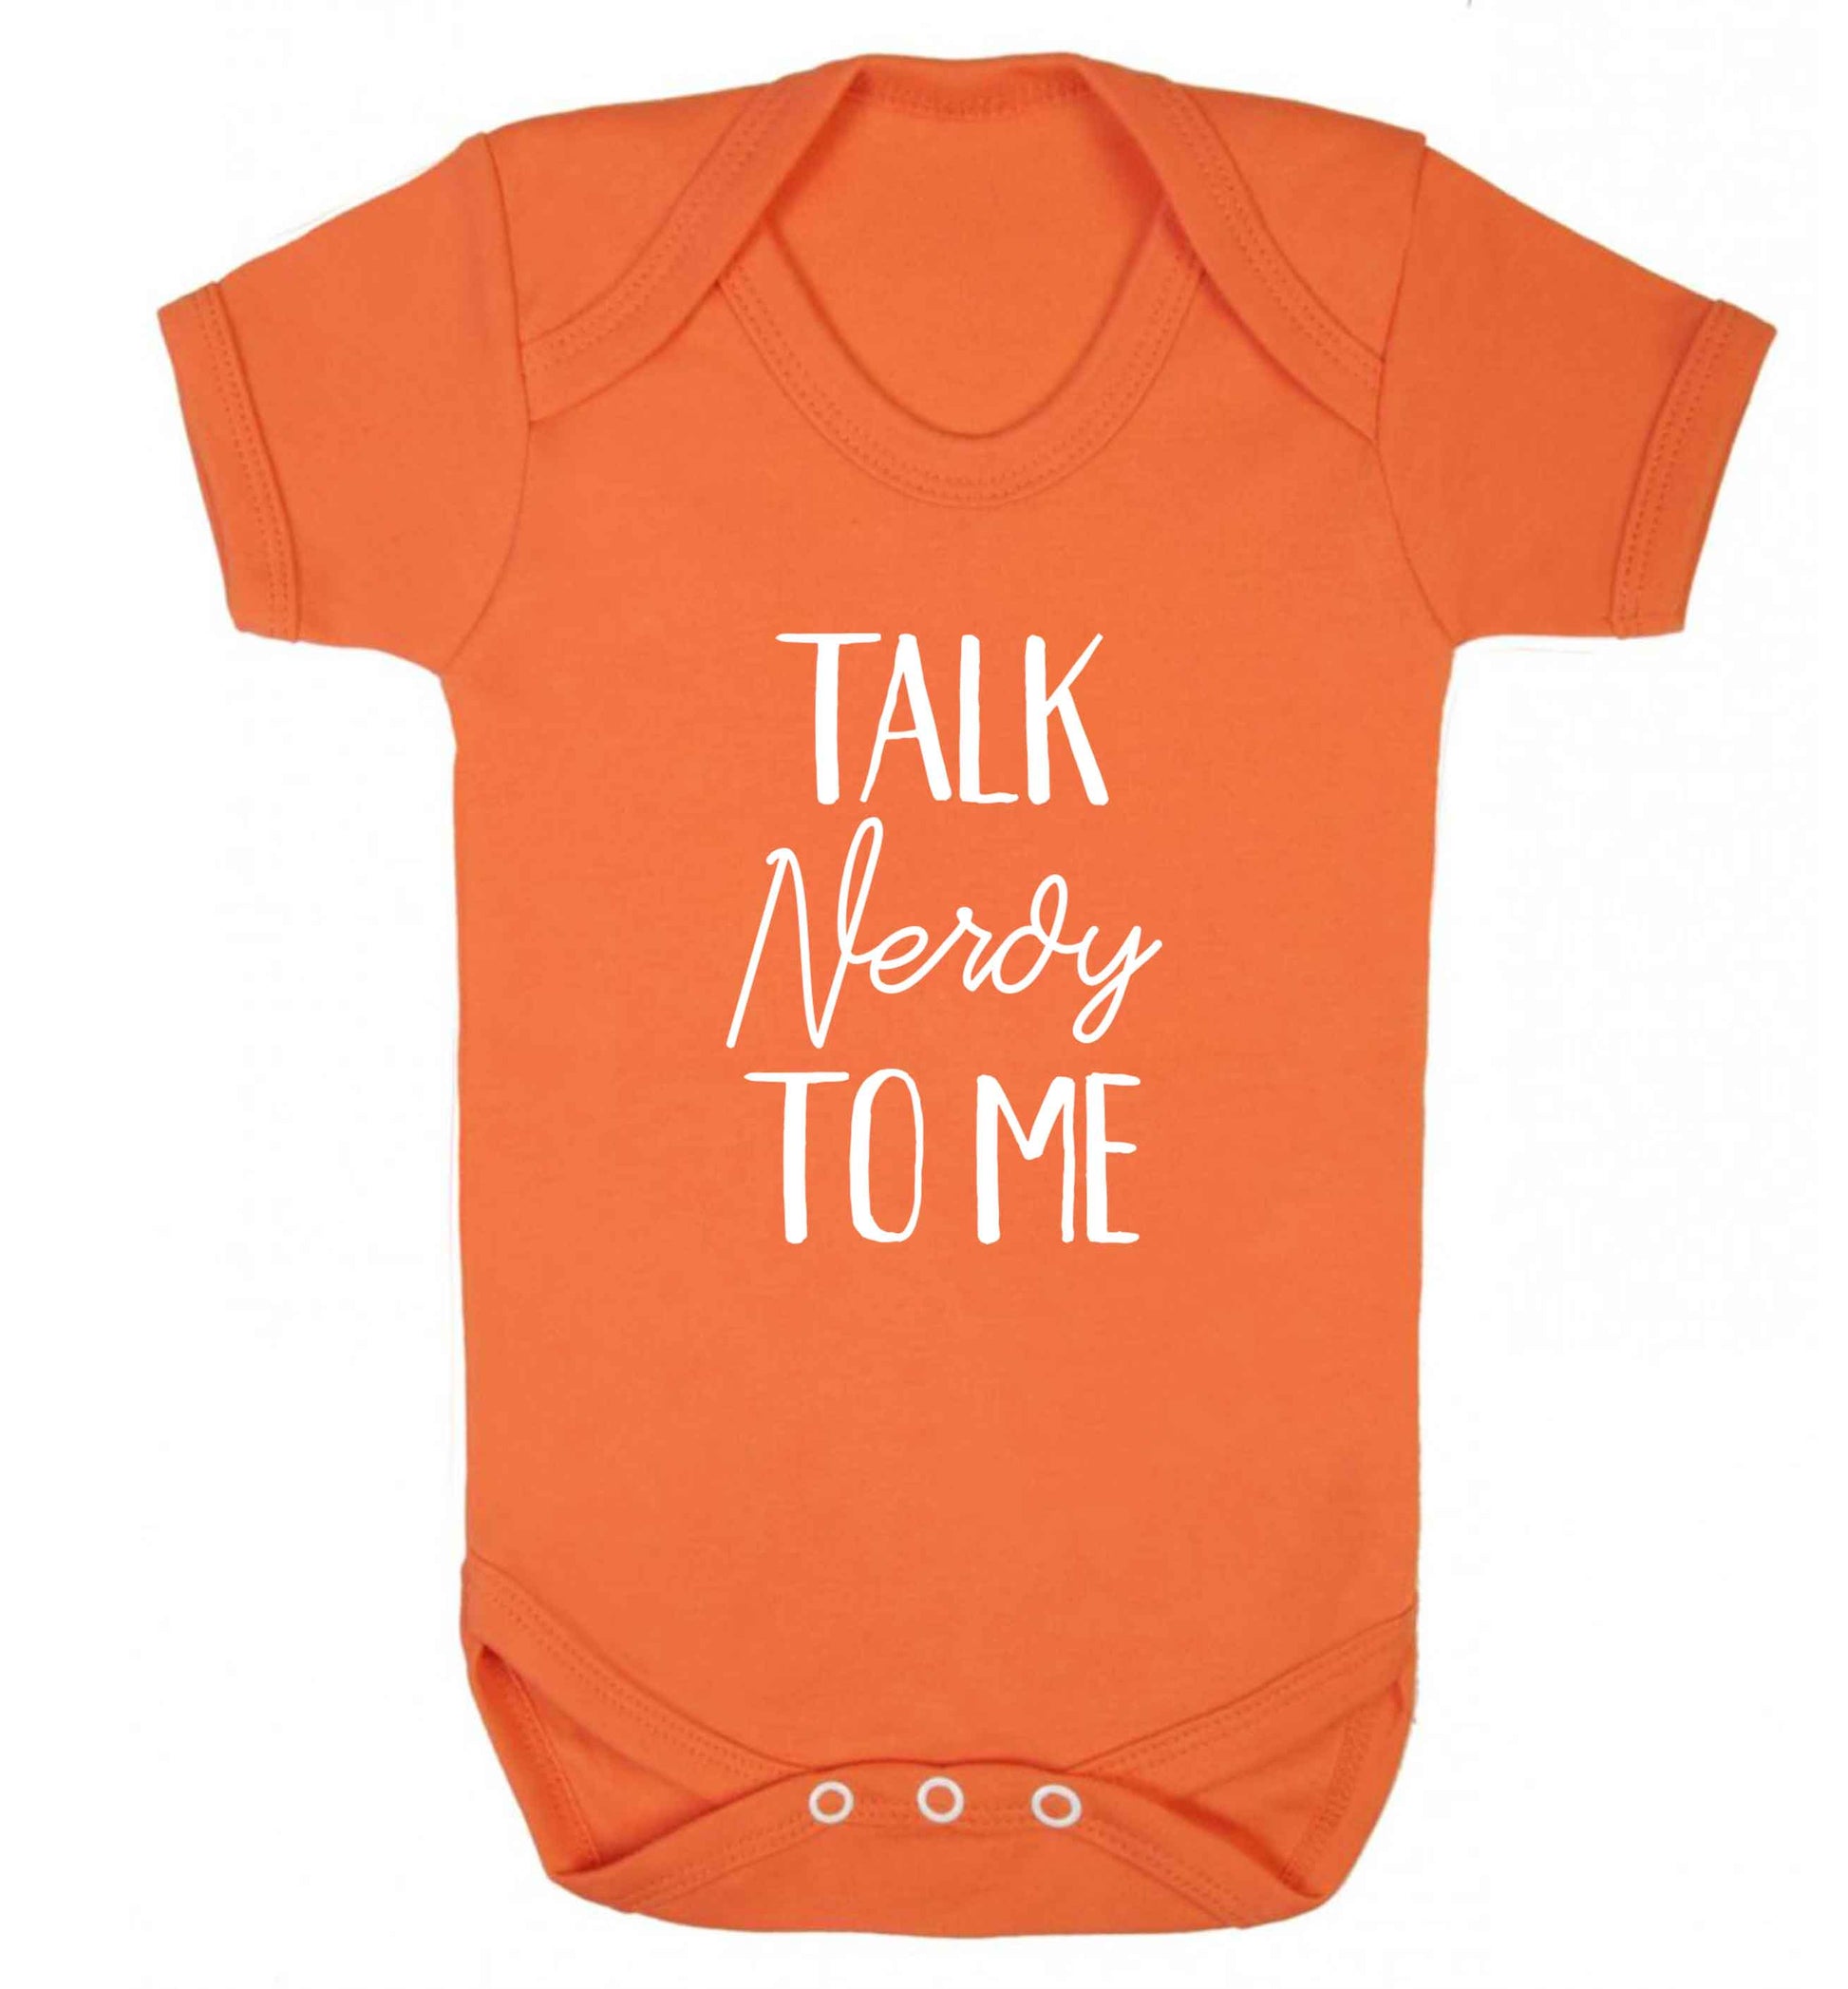 Talk nerdy to me baby vest orange 18-24 months